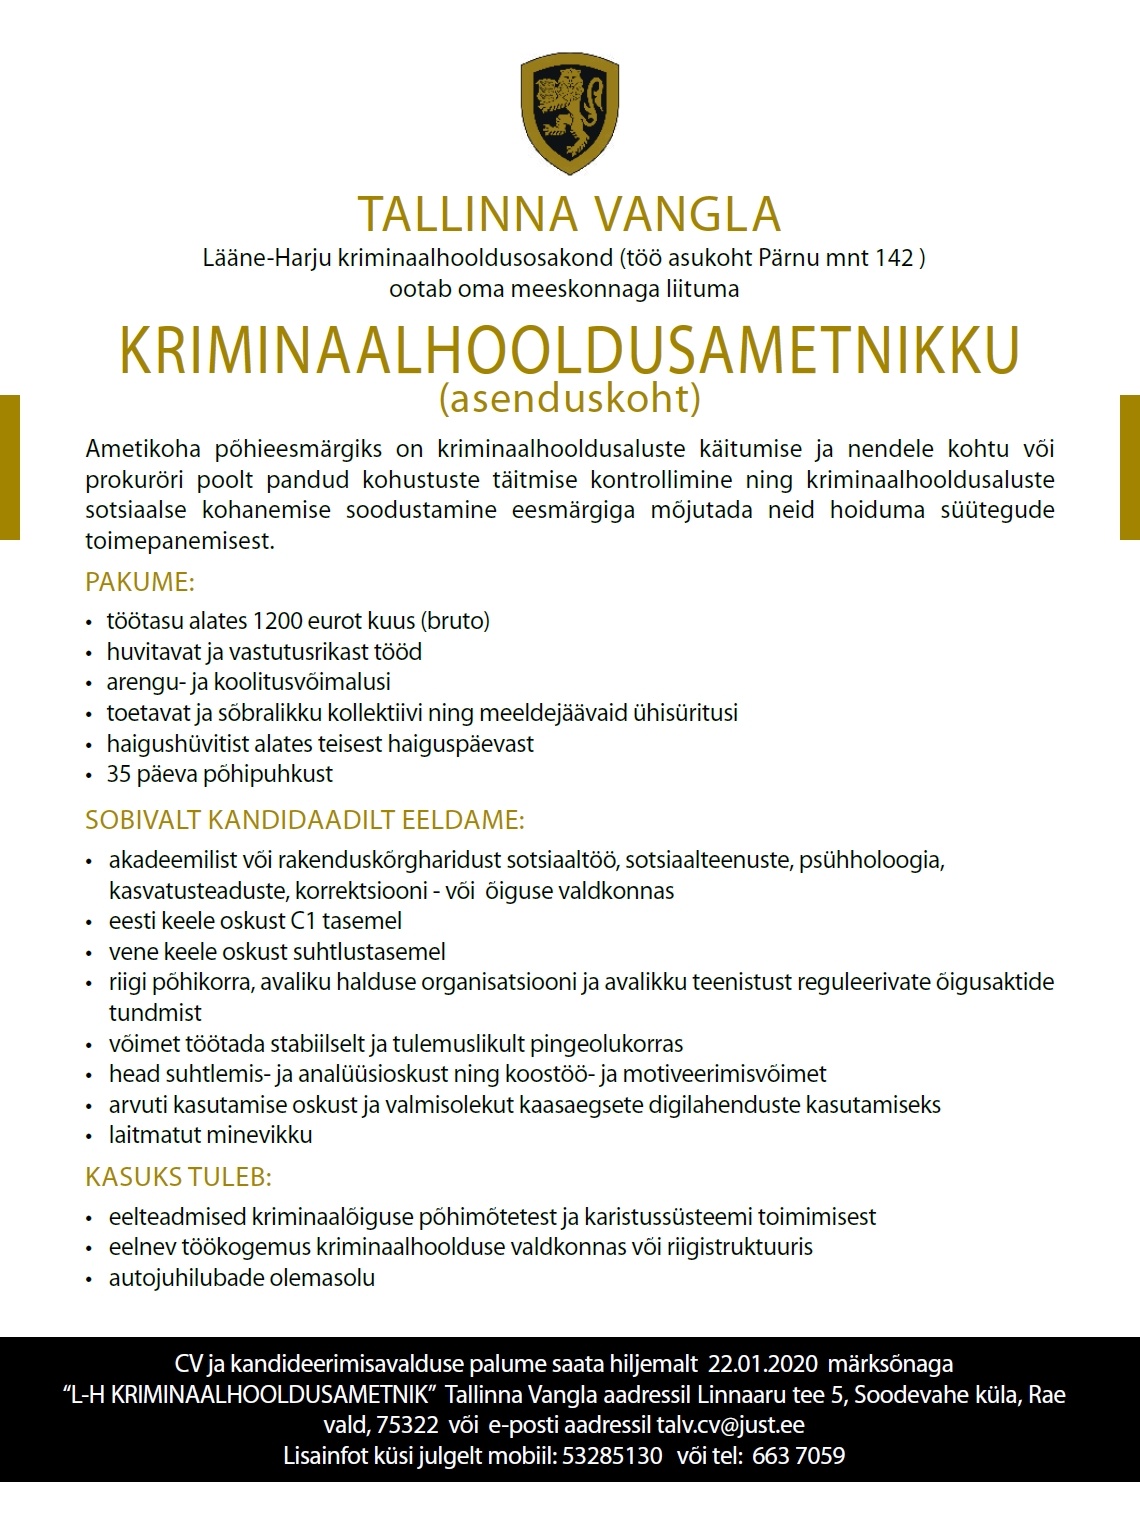 Tallinna Vangla Lääne-Harju Kriminaahooldusosakonna krimiaalhooldusametnik (asenduskoht)